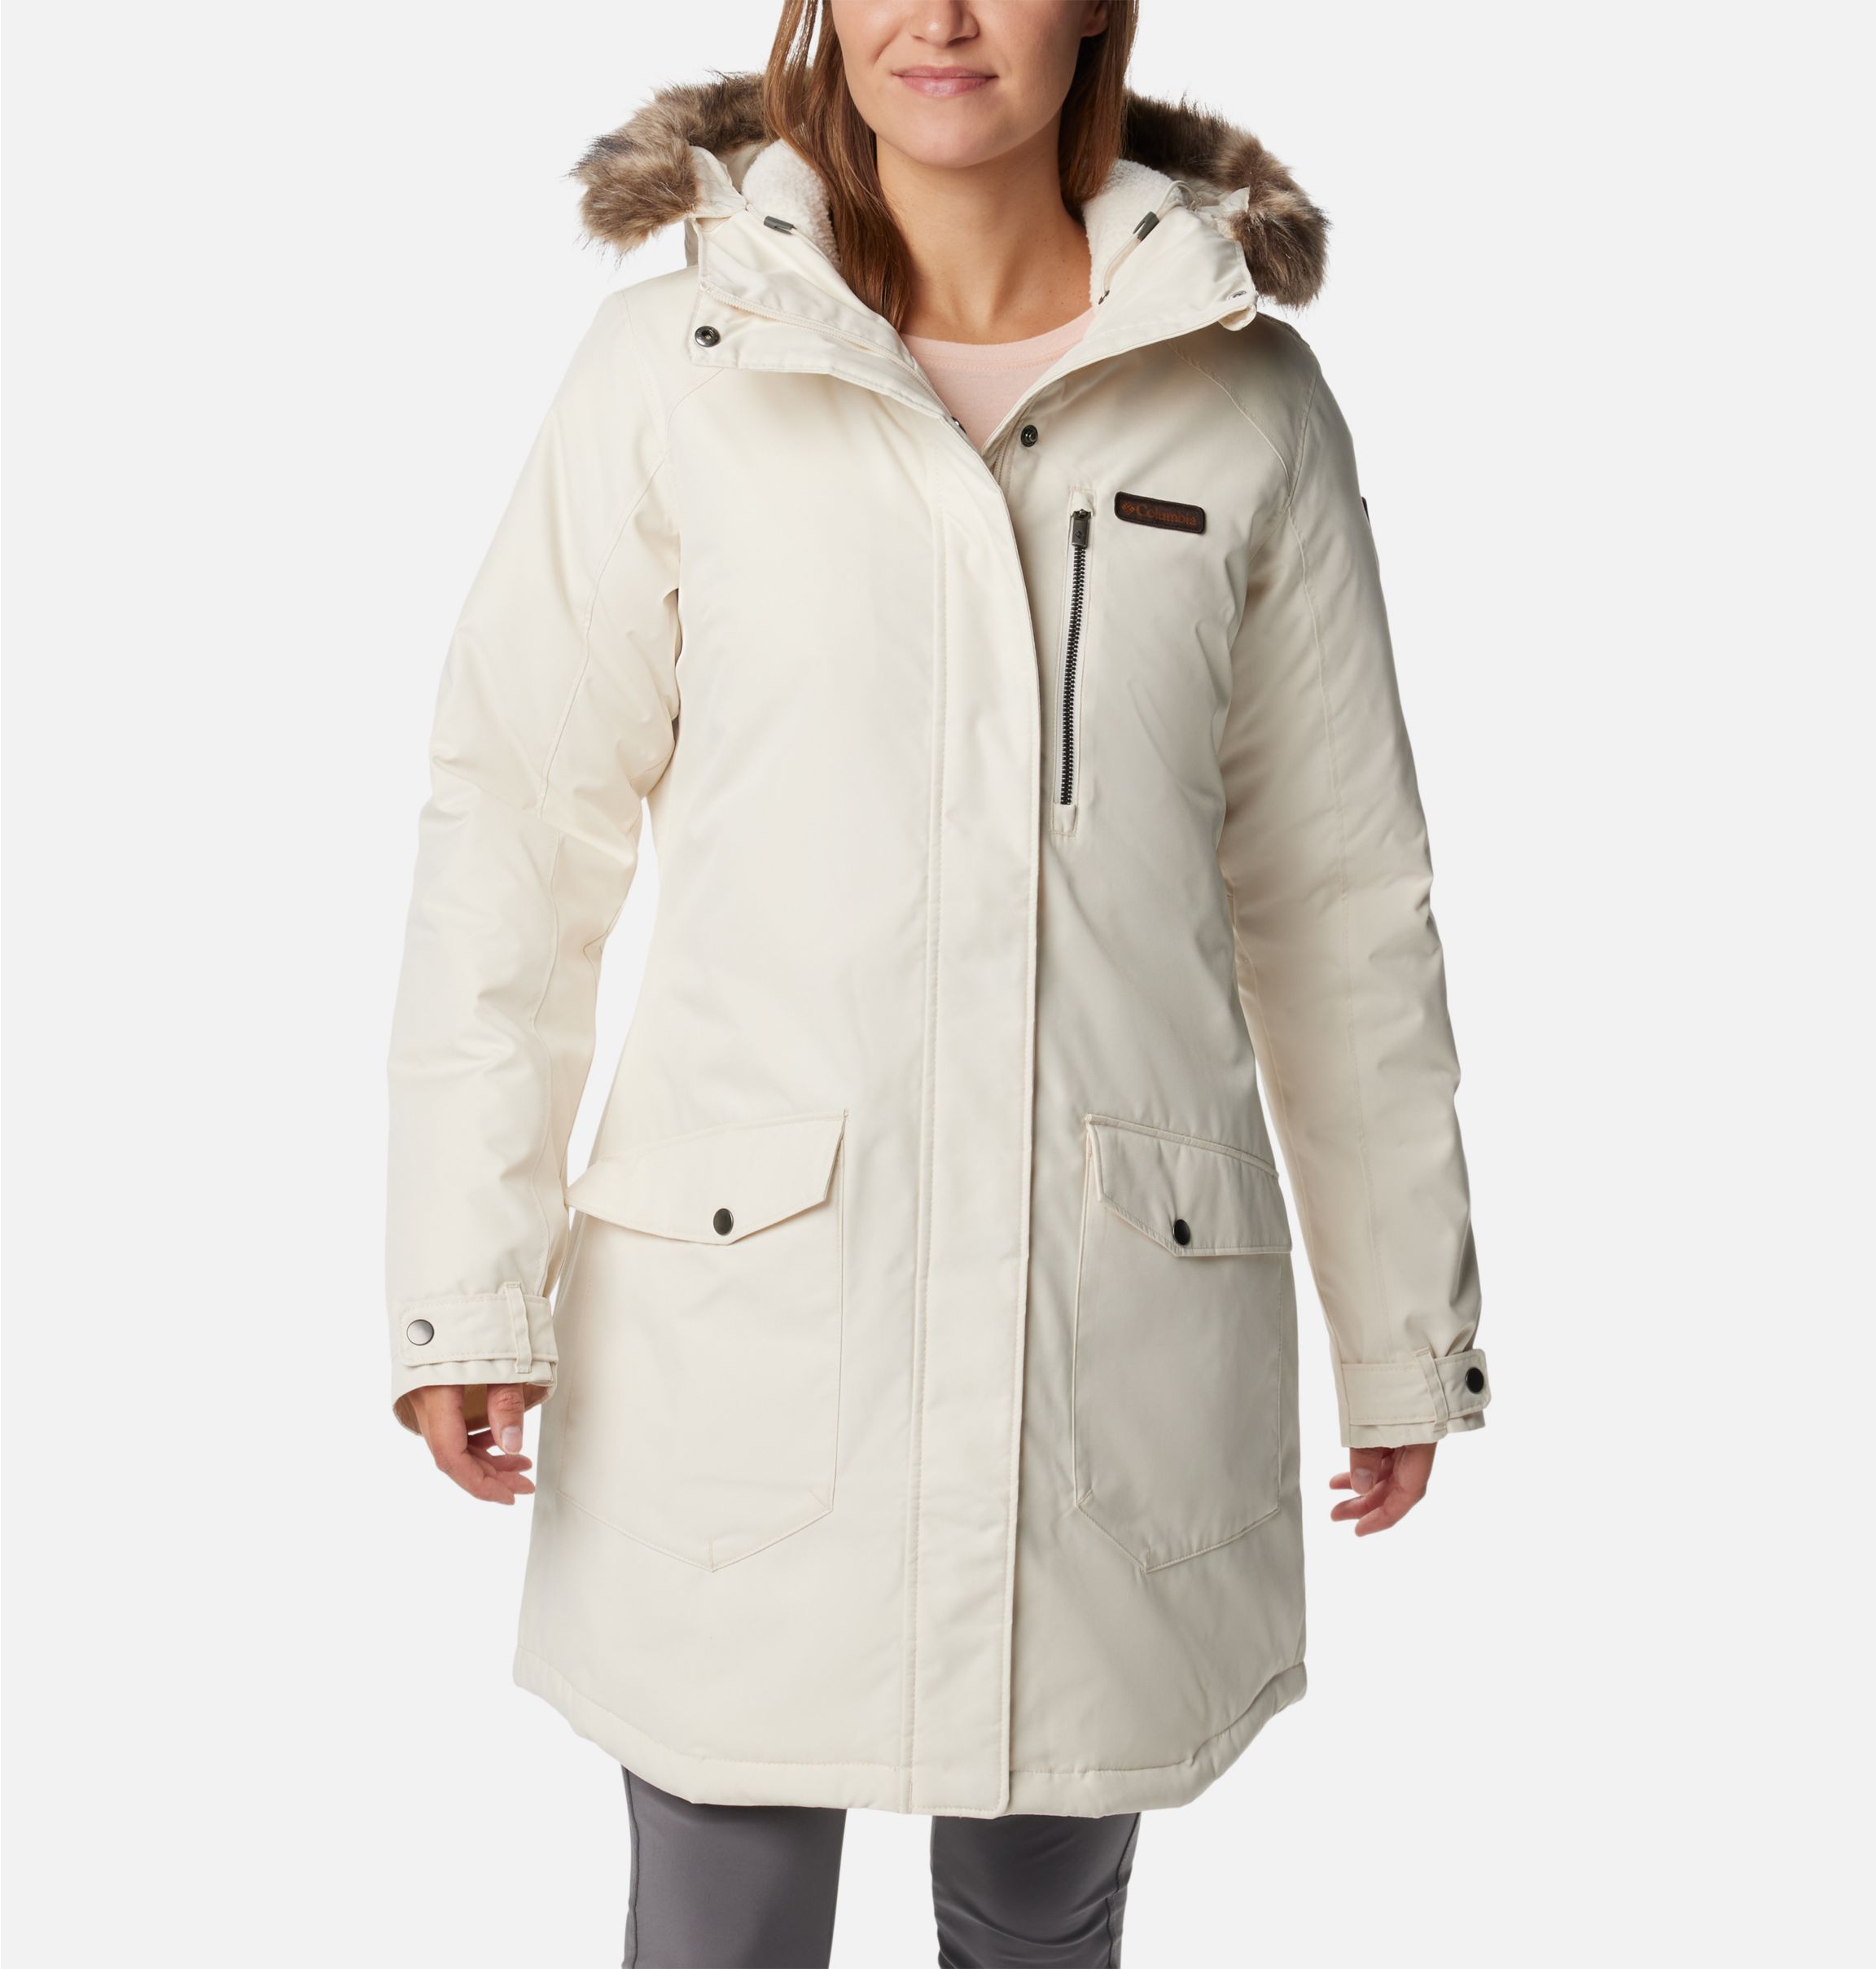 Collections Etc Women's Polar Fleece Sherpa Lined Zip Up Coat Beige X-Large